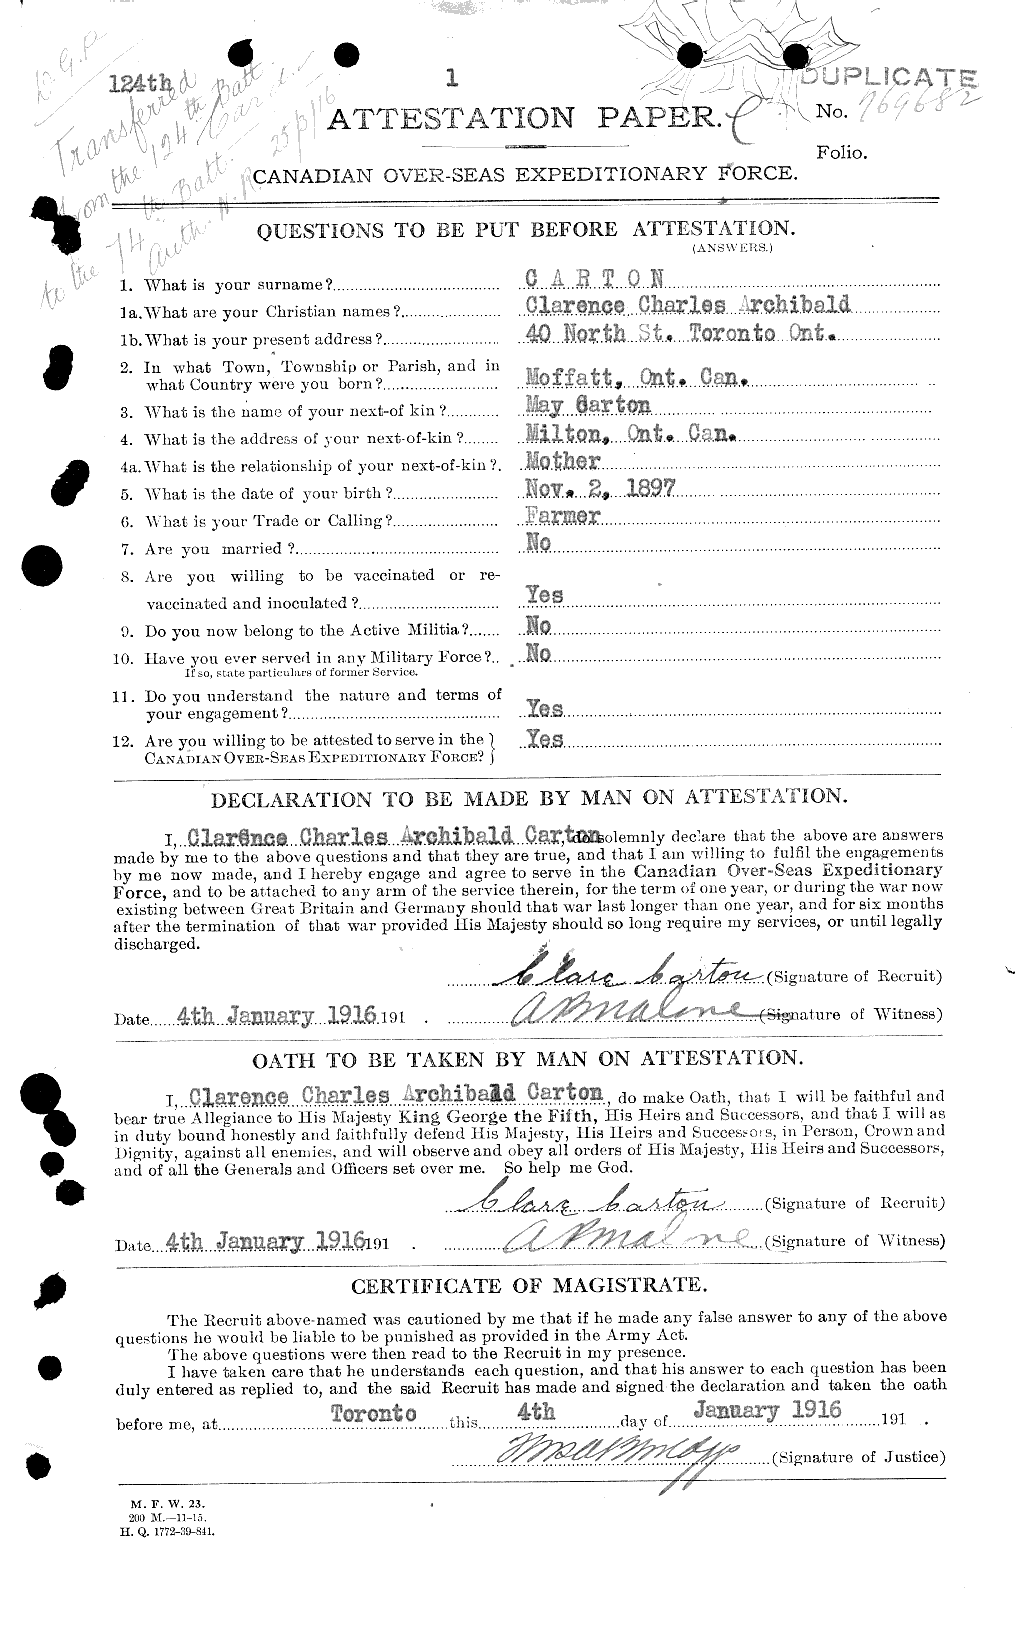 Dossiers du Personnel de la Première Guerre mondiale - CEC 012538a